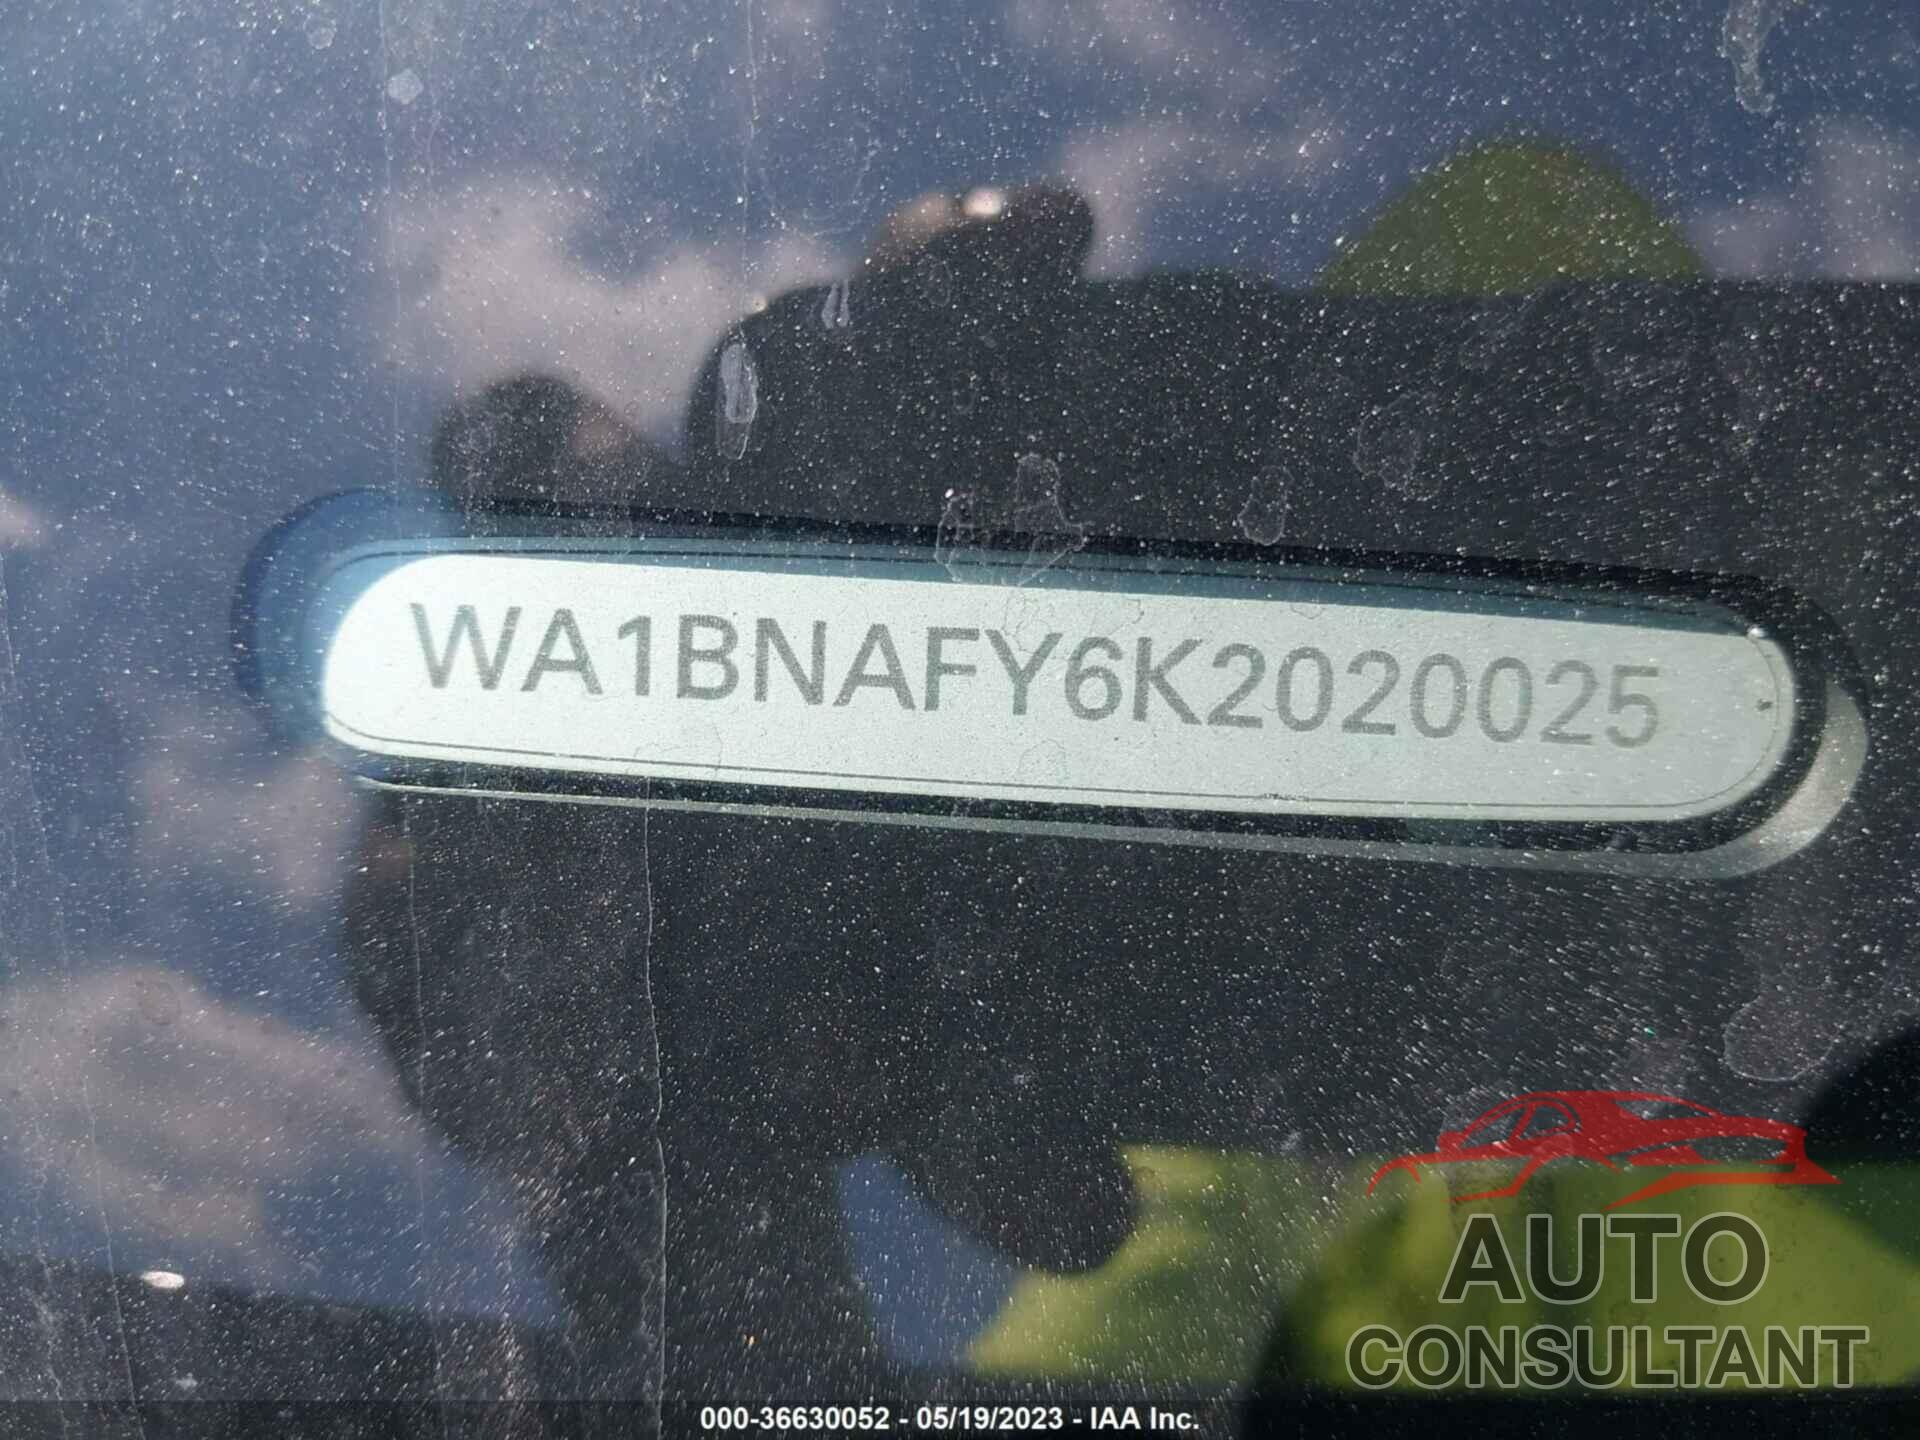 AUDI Q5 2019 - WA1BNAFY6K2020025